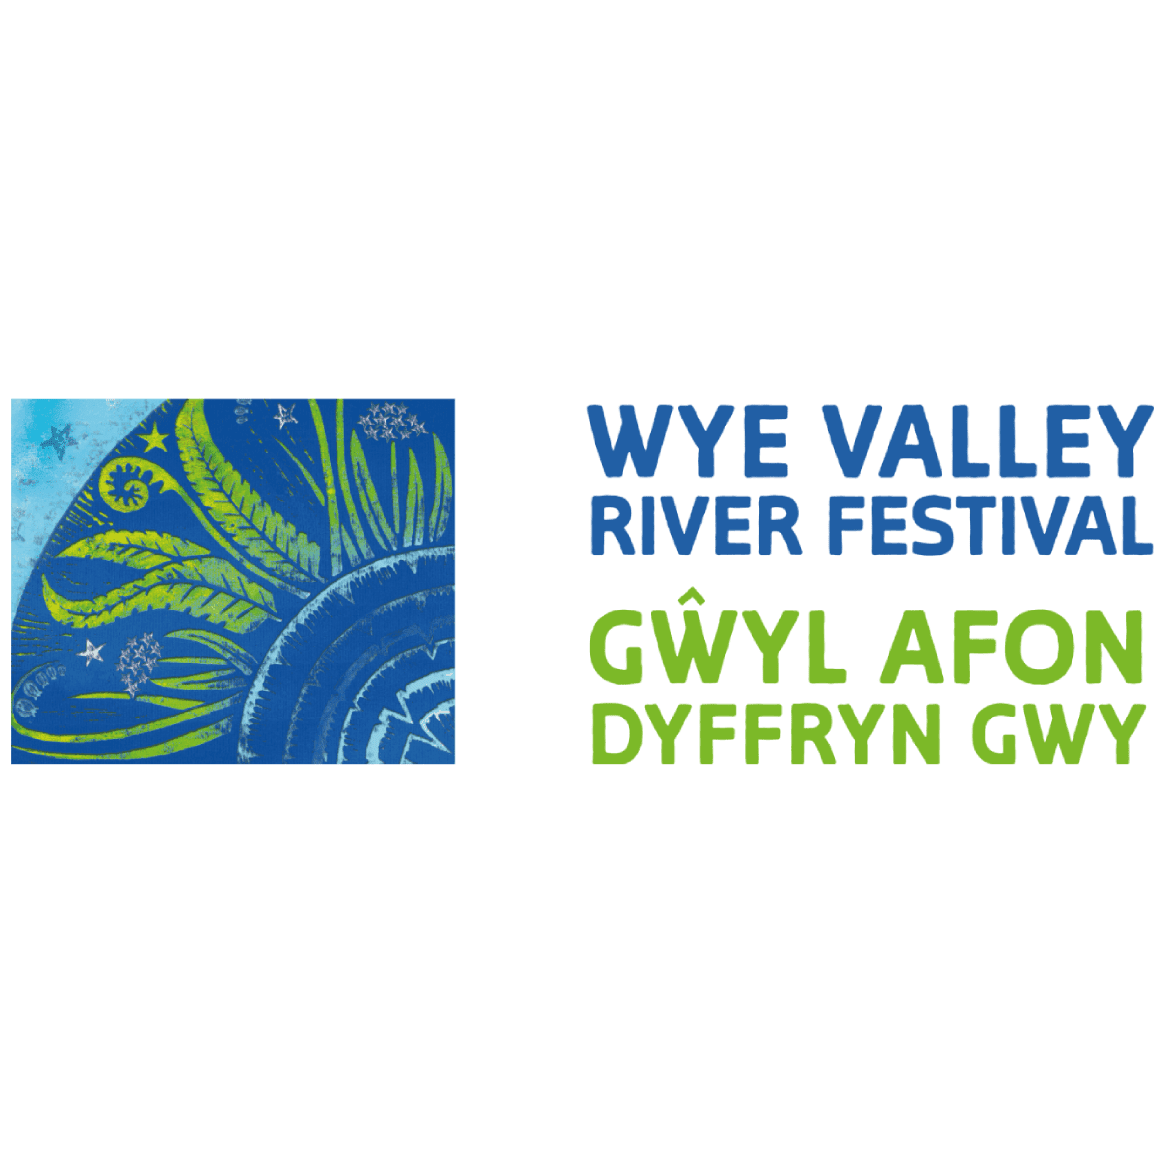 Wye Valley River Festival, Gwyl Afon Dyffryn Gwy 